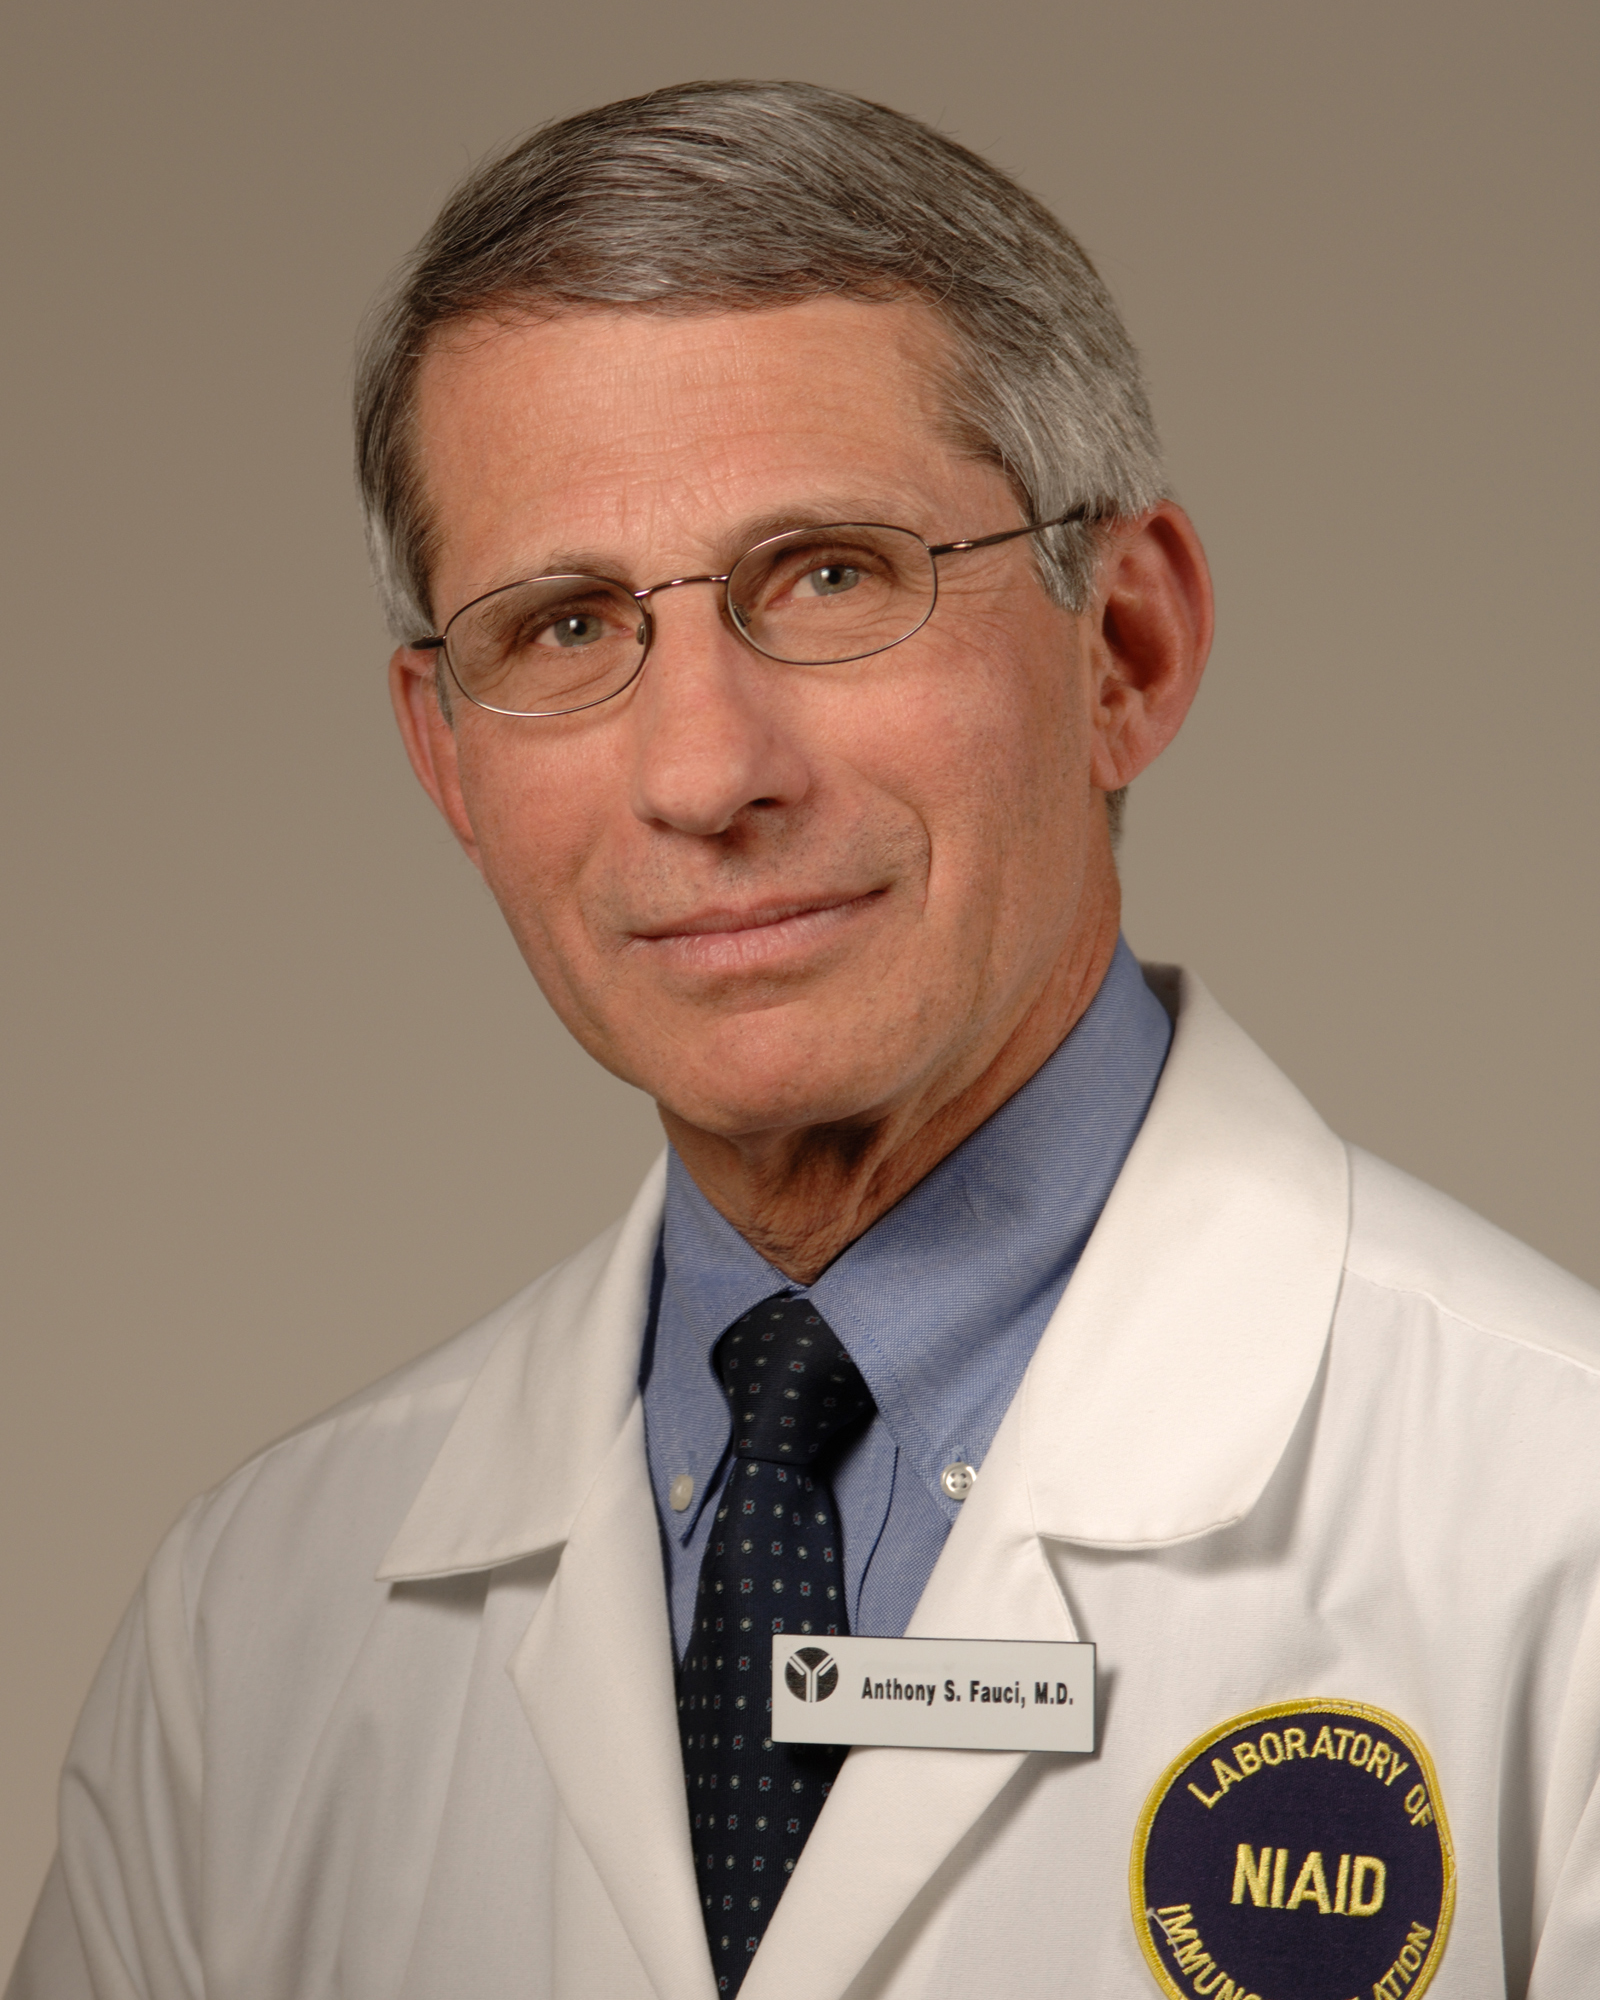 Dr. Anthony Fauci  headshot